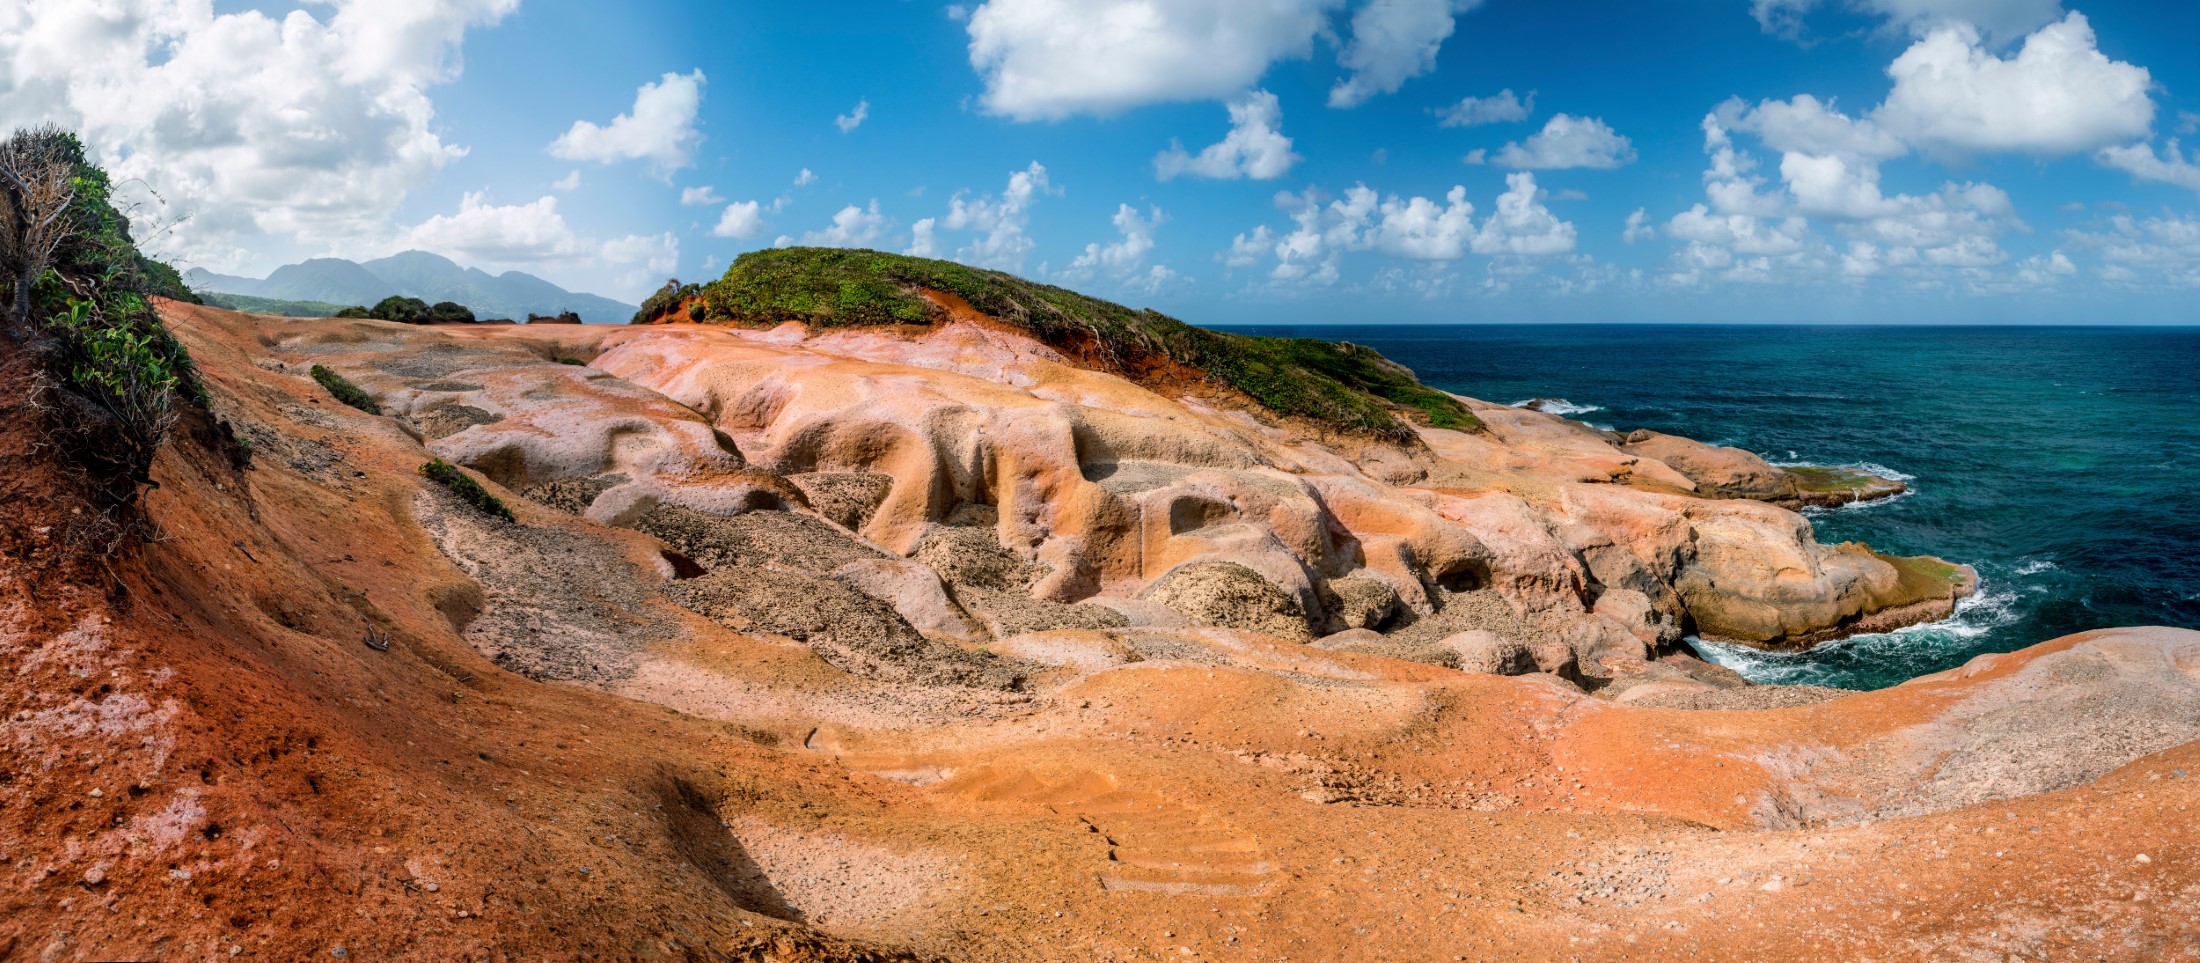 Red Rock, niezwykła formacja skalna na atlantyckim wybrzeżu Dominiki